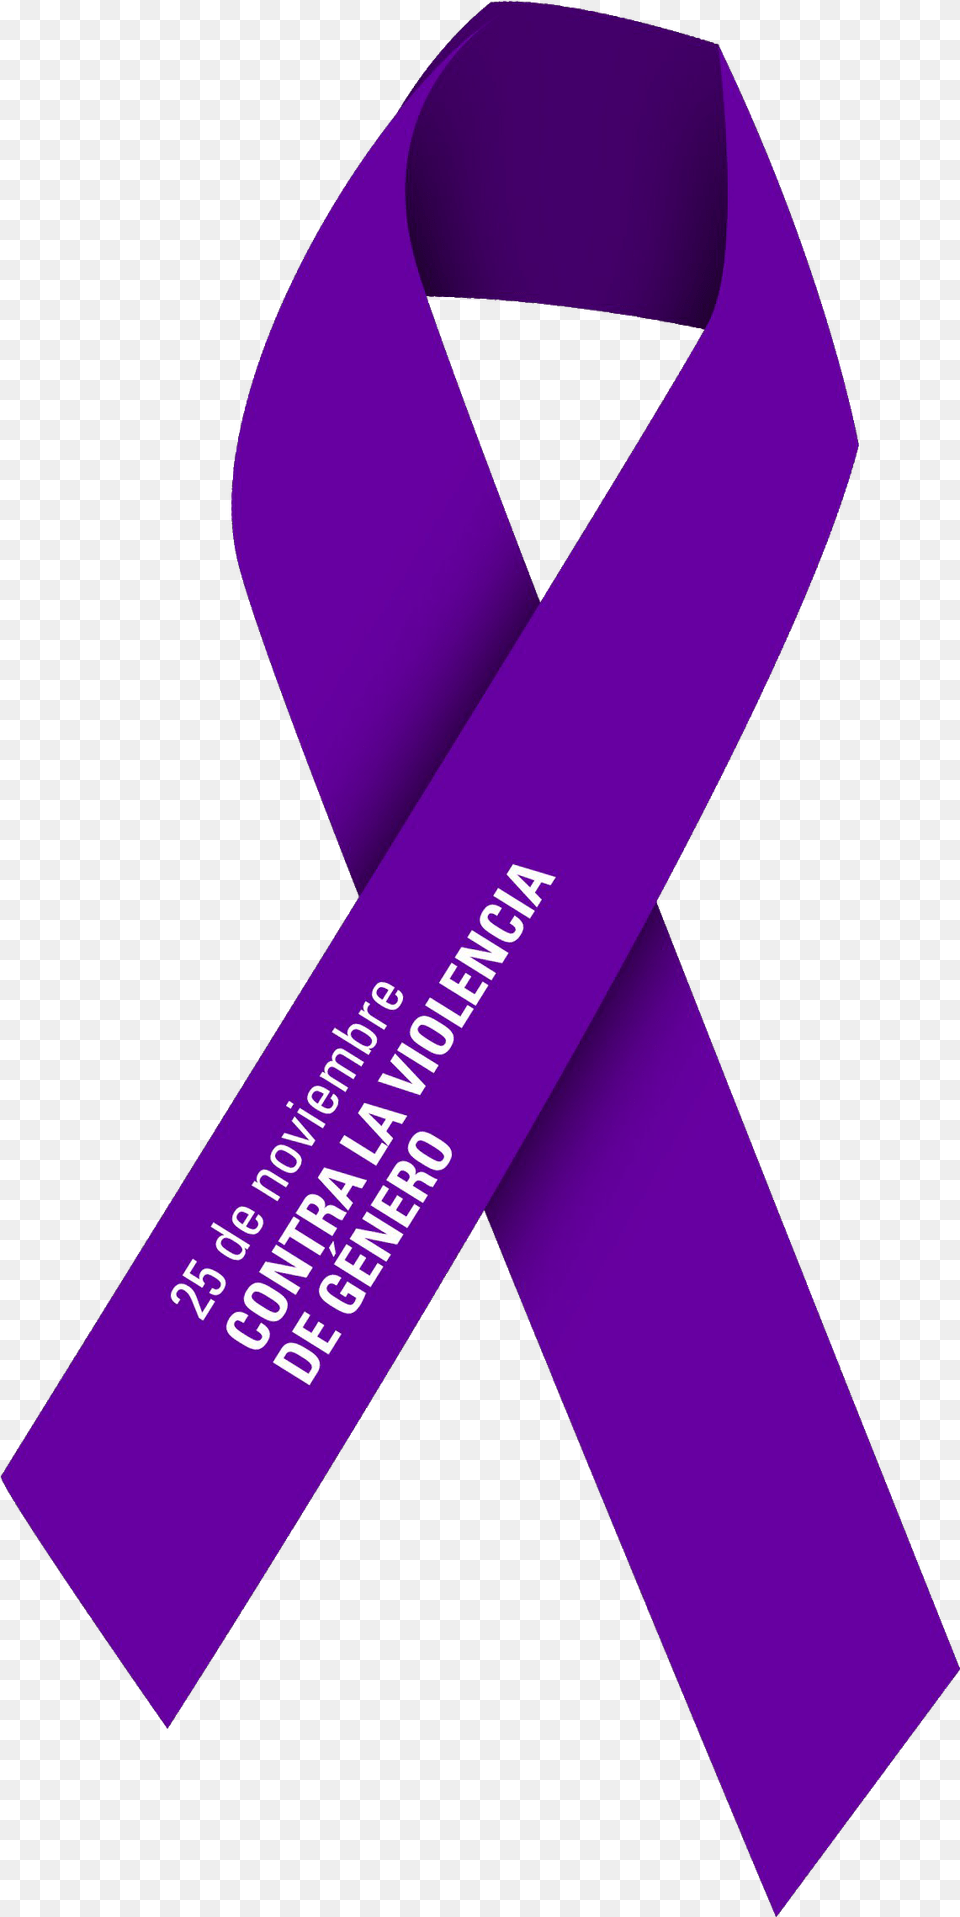 De Luto Lazo Contra La Violencia De Gnero, Purple, Sash Png Image